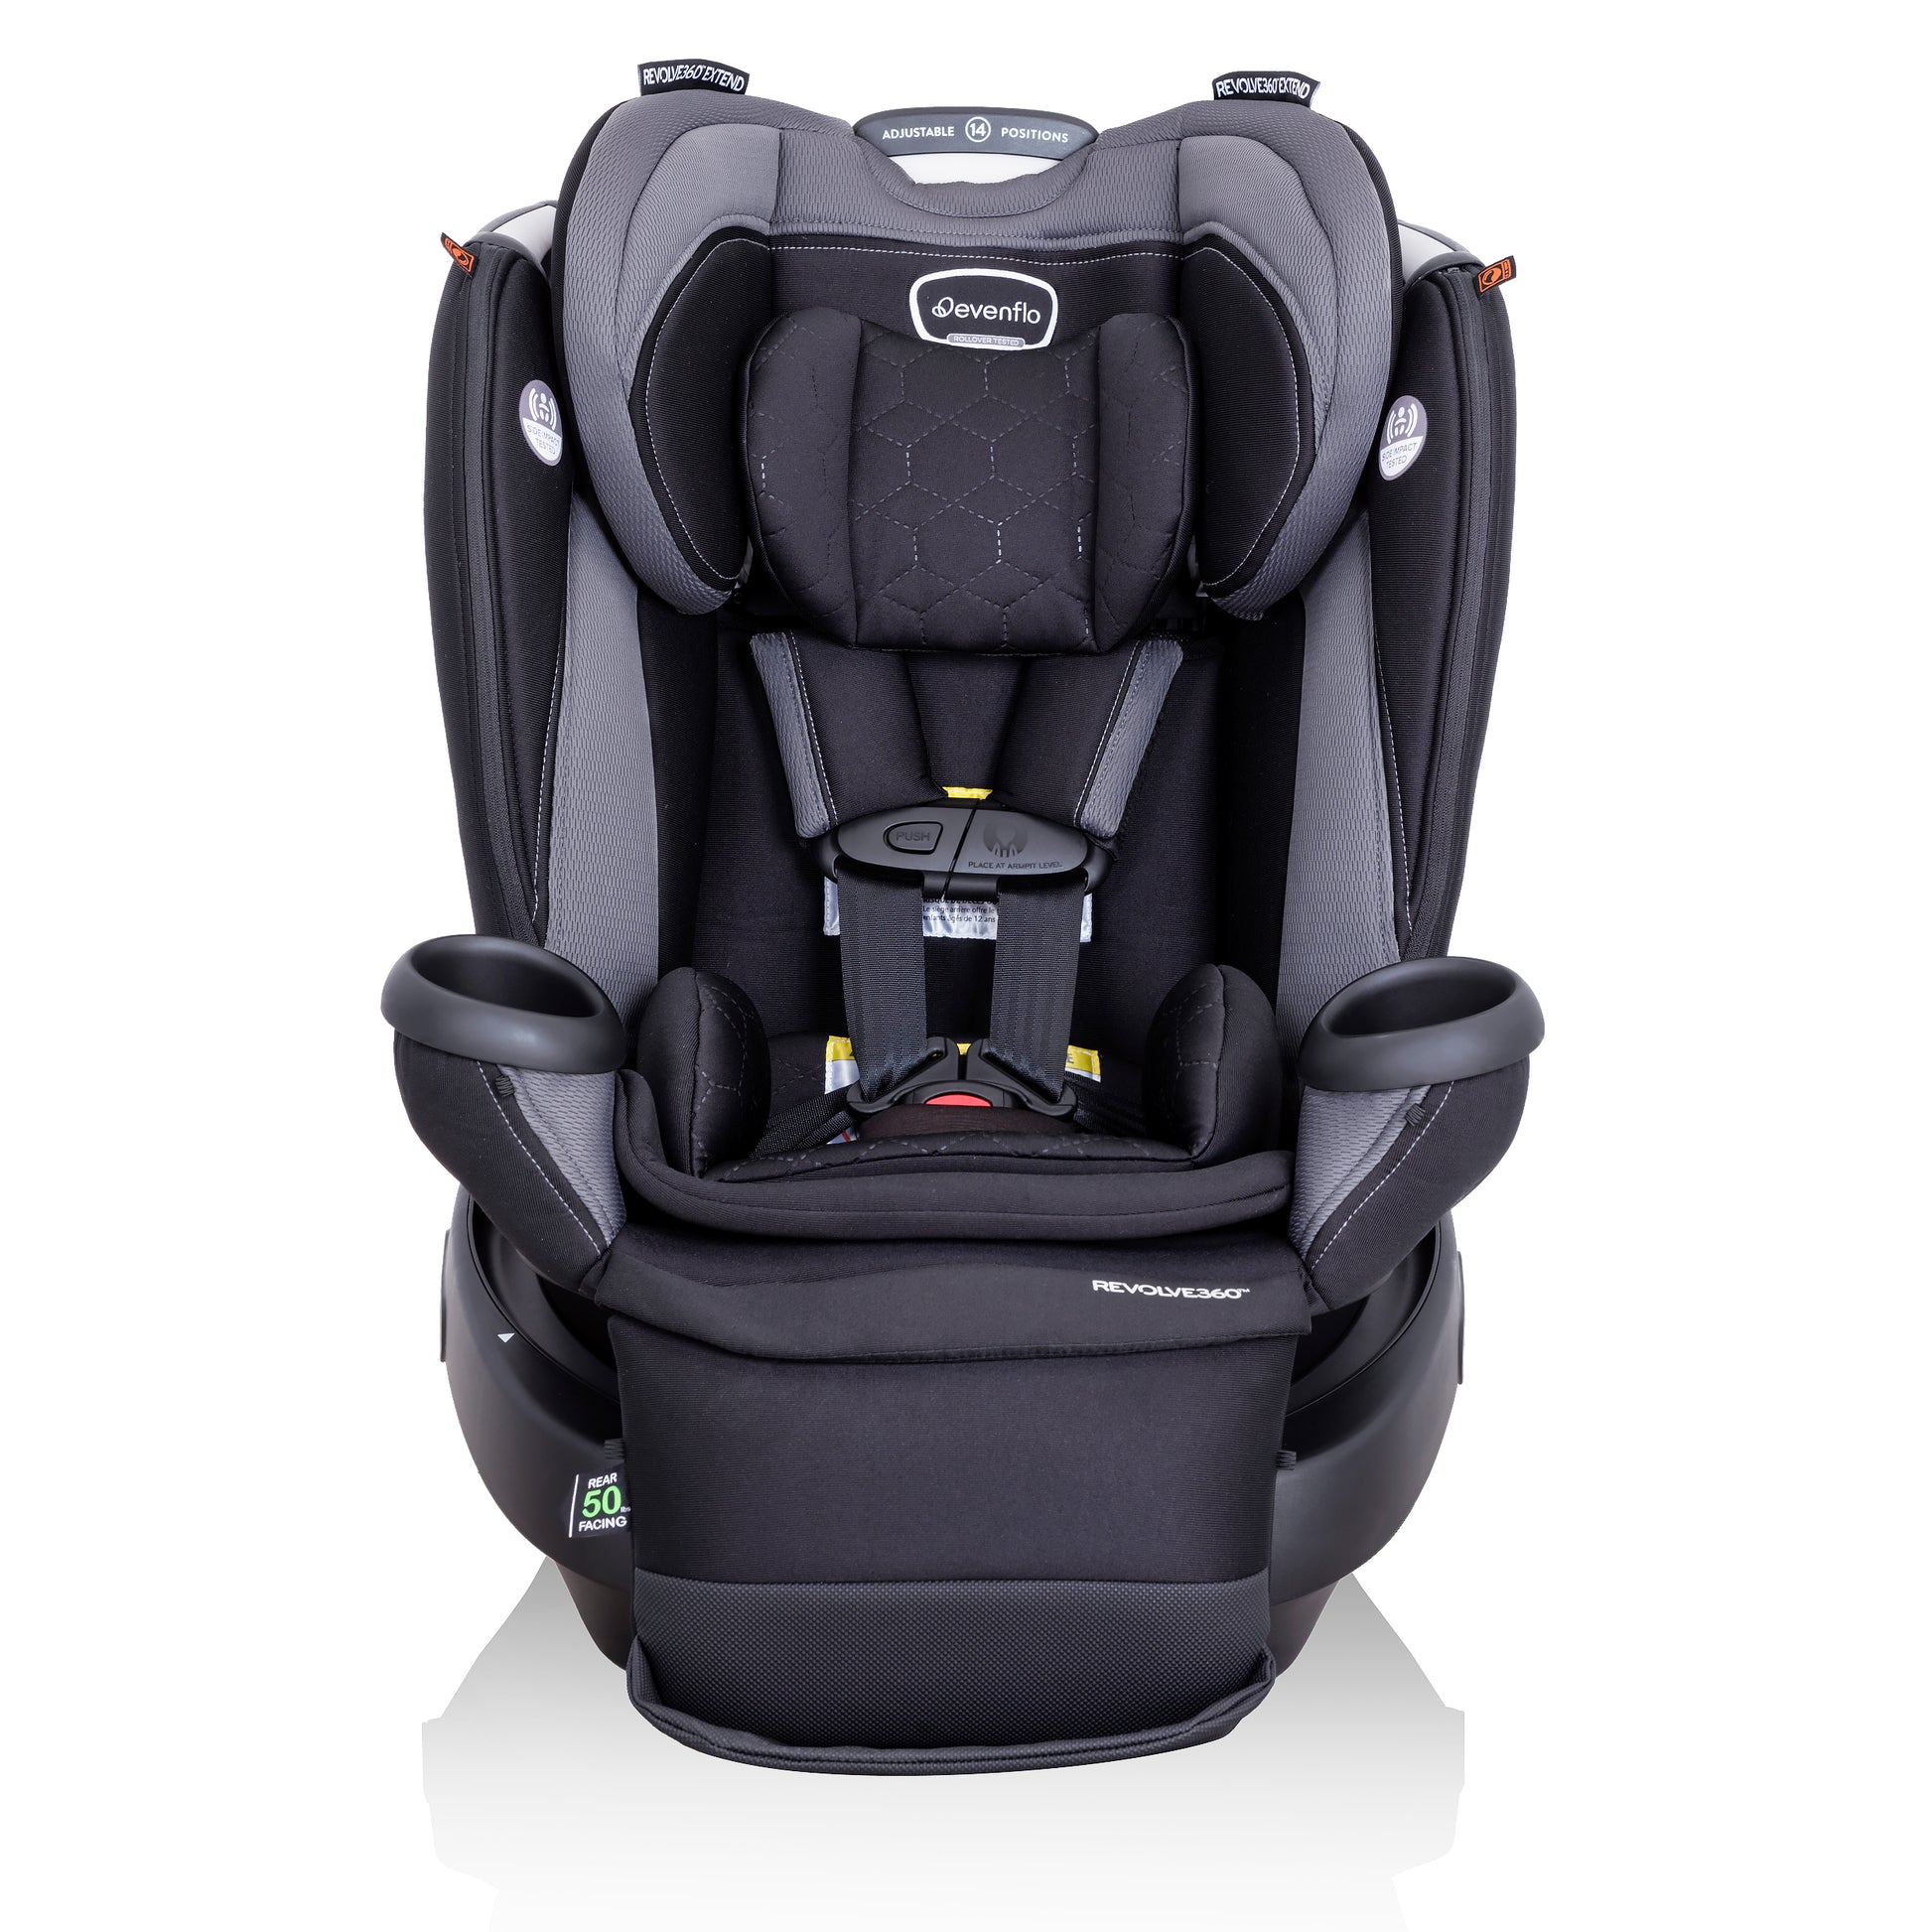 Mothers Choice Car Seat Protector Mat